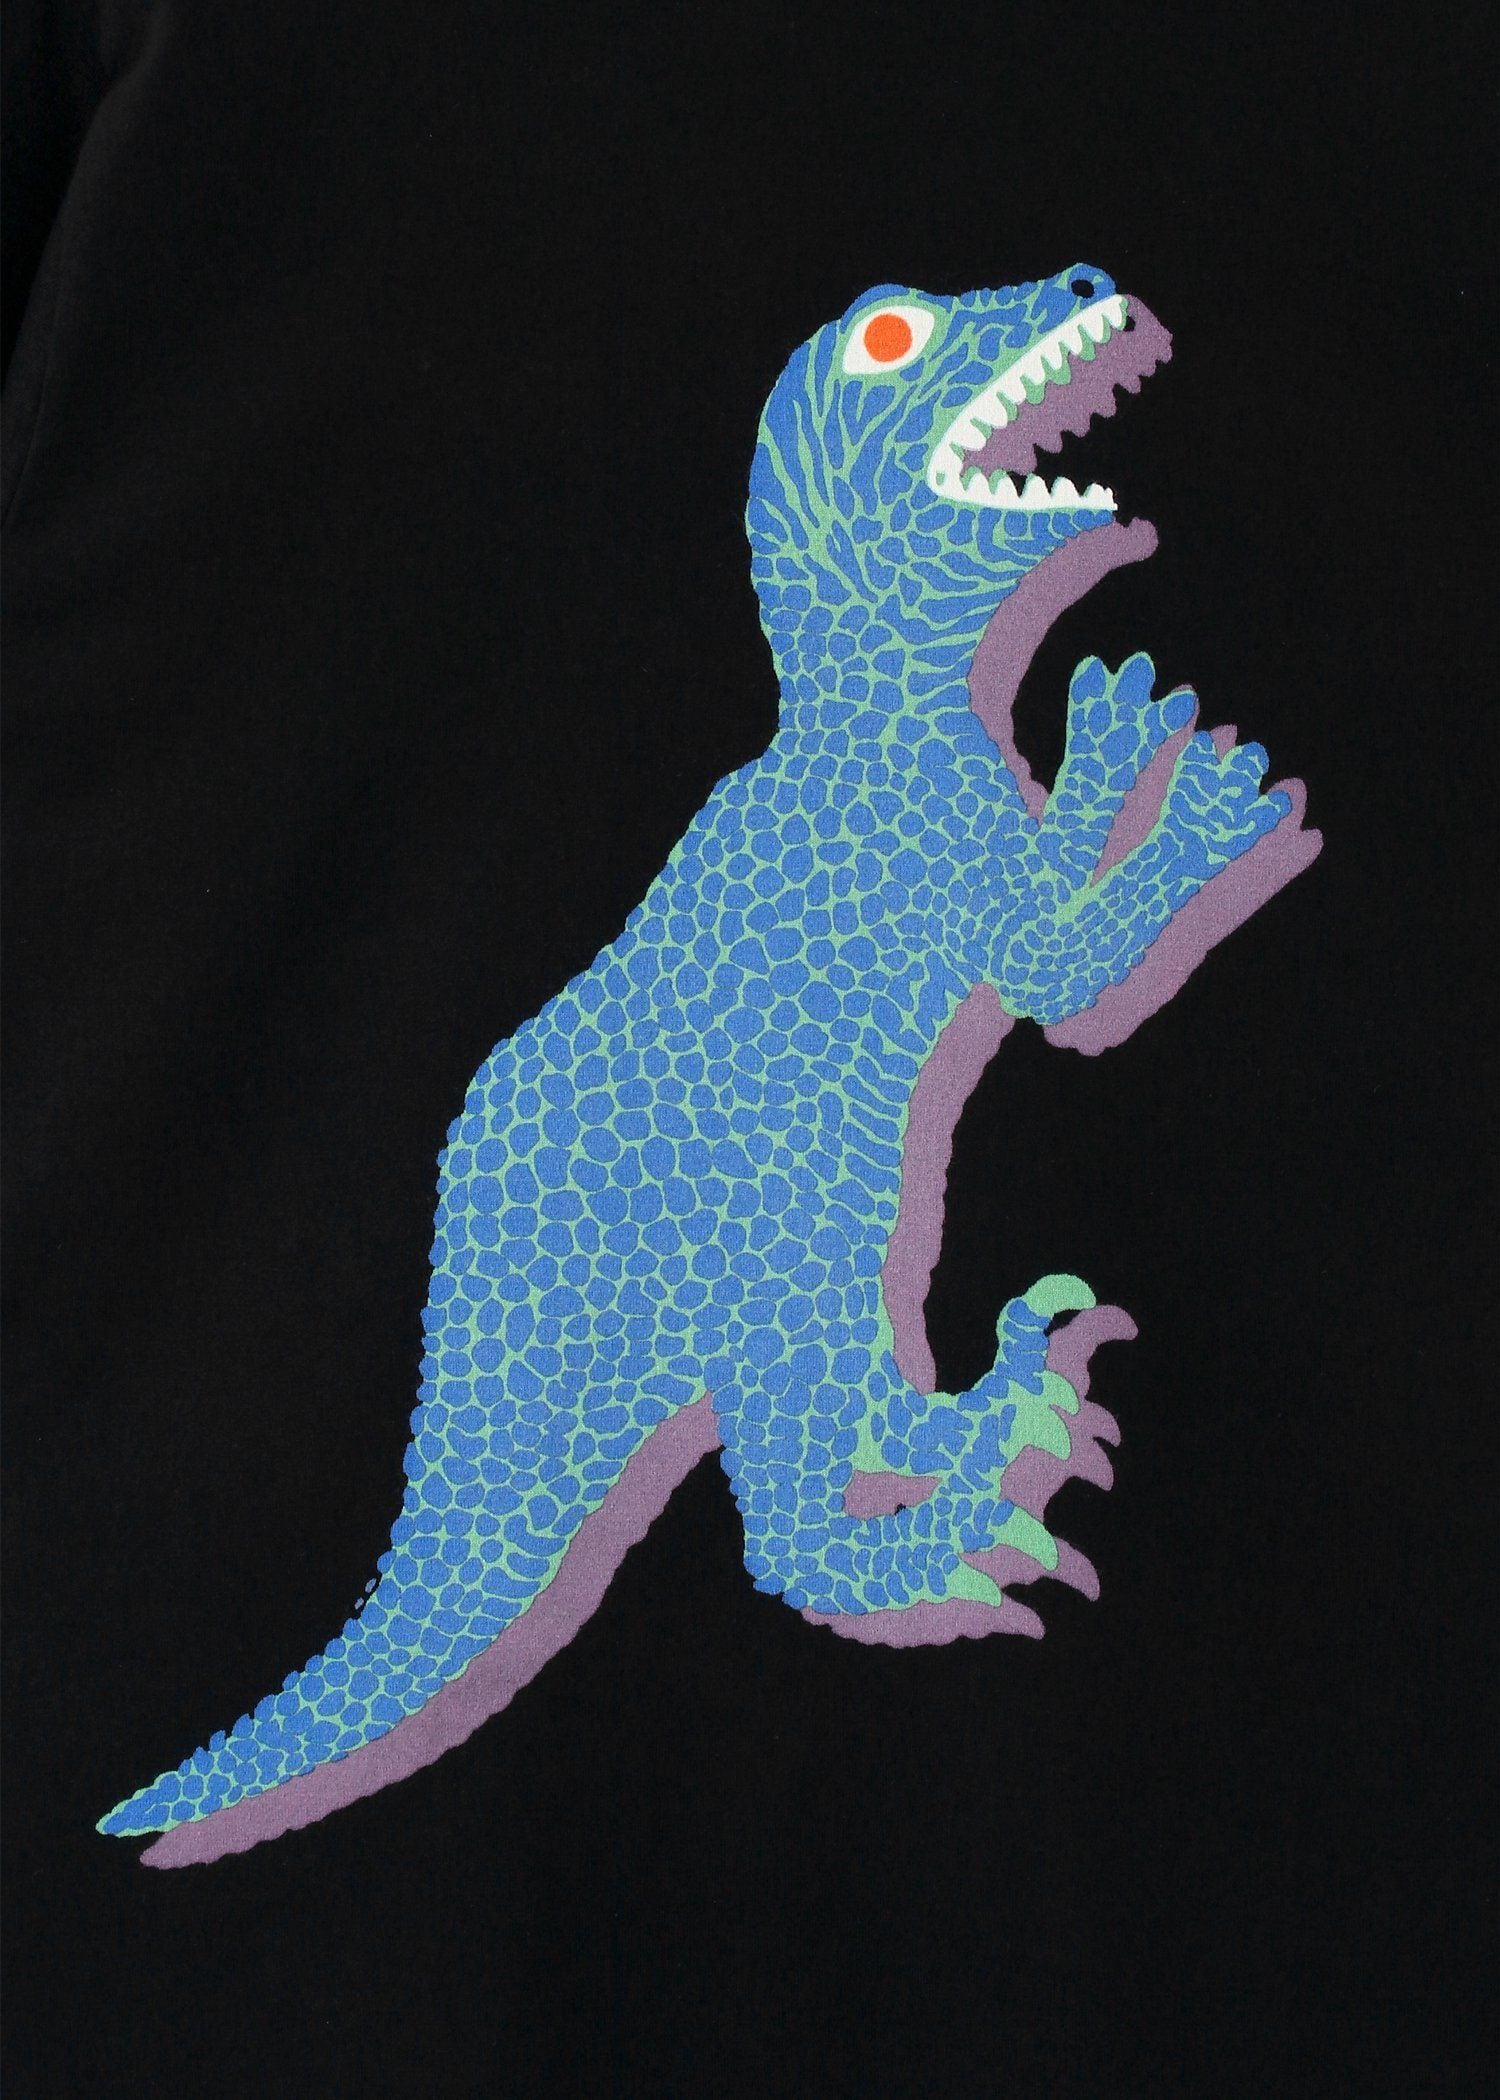 "Dino" ビッグプリント Tシャツ